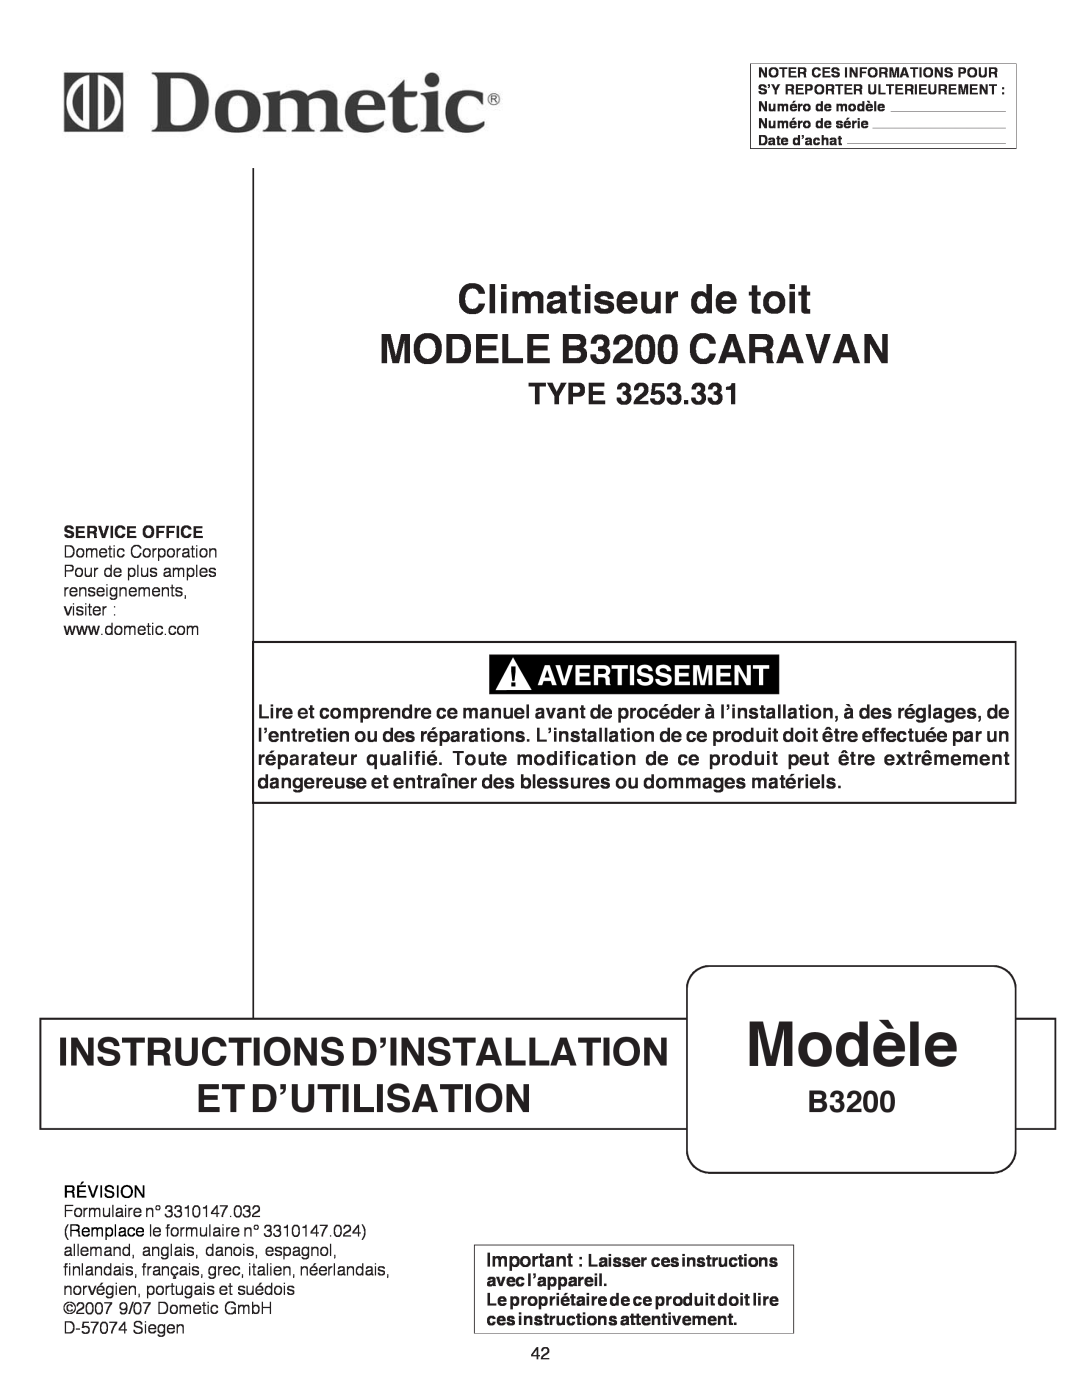 Dometic manual Climatiseur de toit MODELE B3200 CARAVAN, INSTRUCTIONS D’INSTALLATION Modèle, ET D’UTILISATIONB3200, Type 